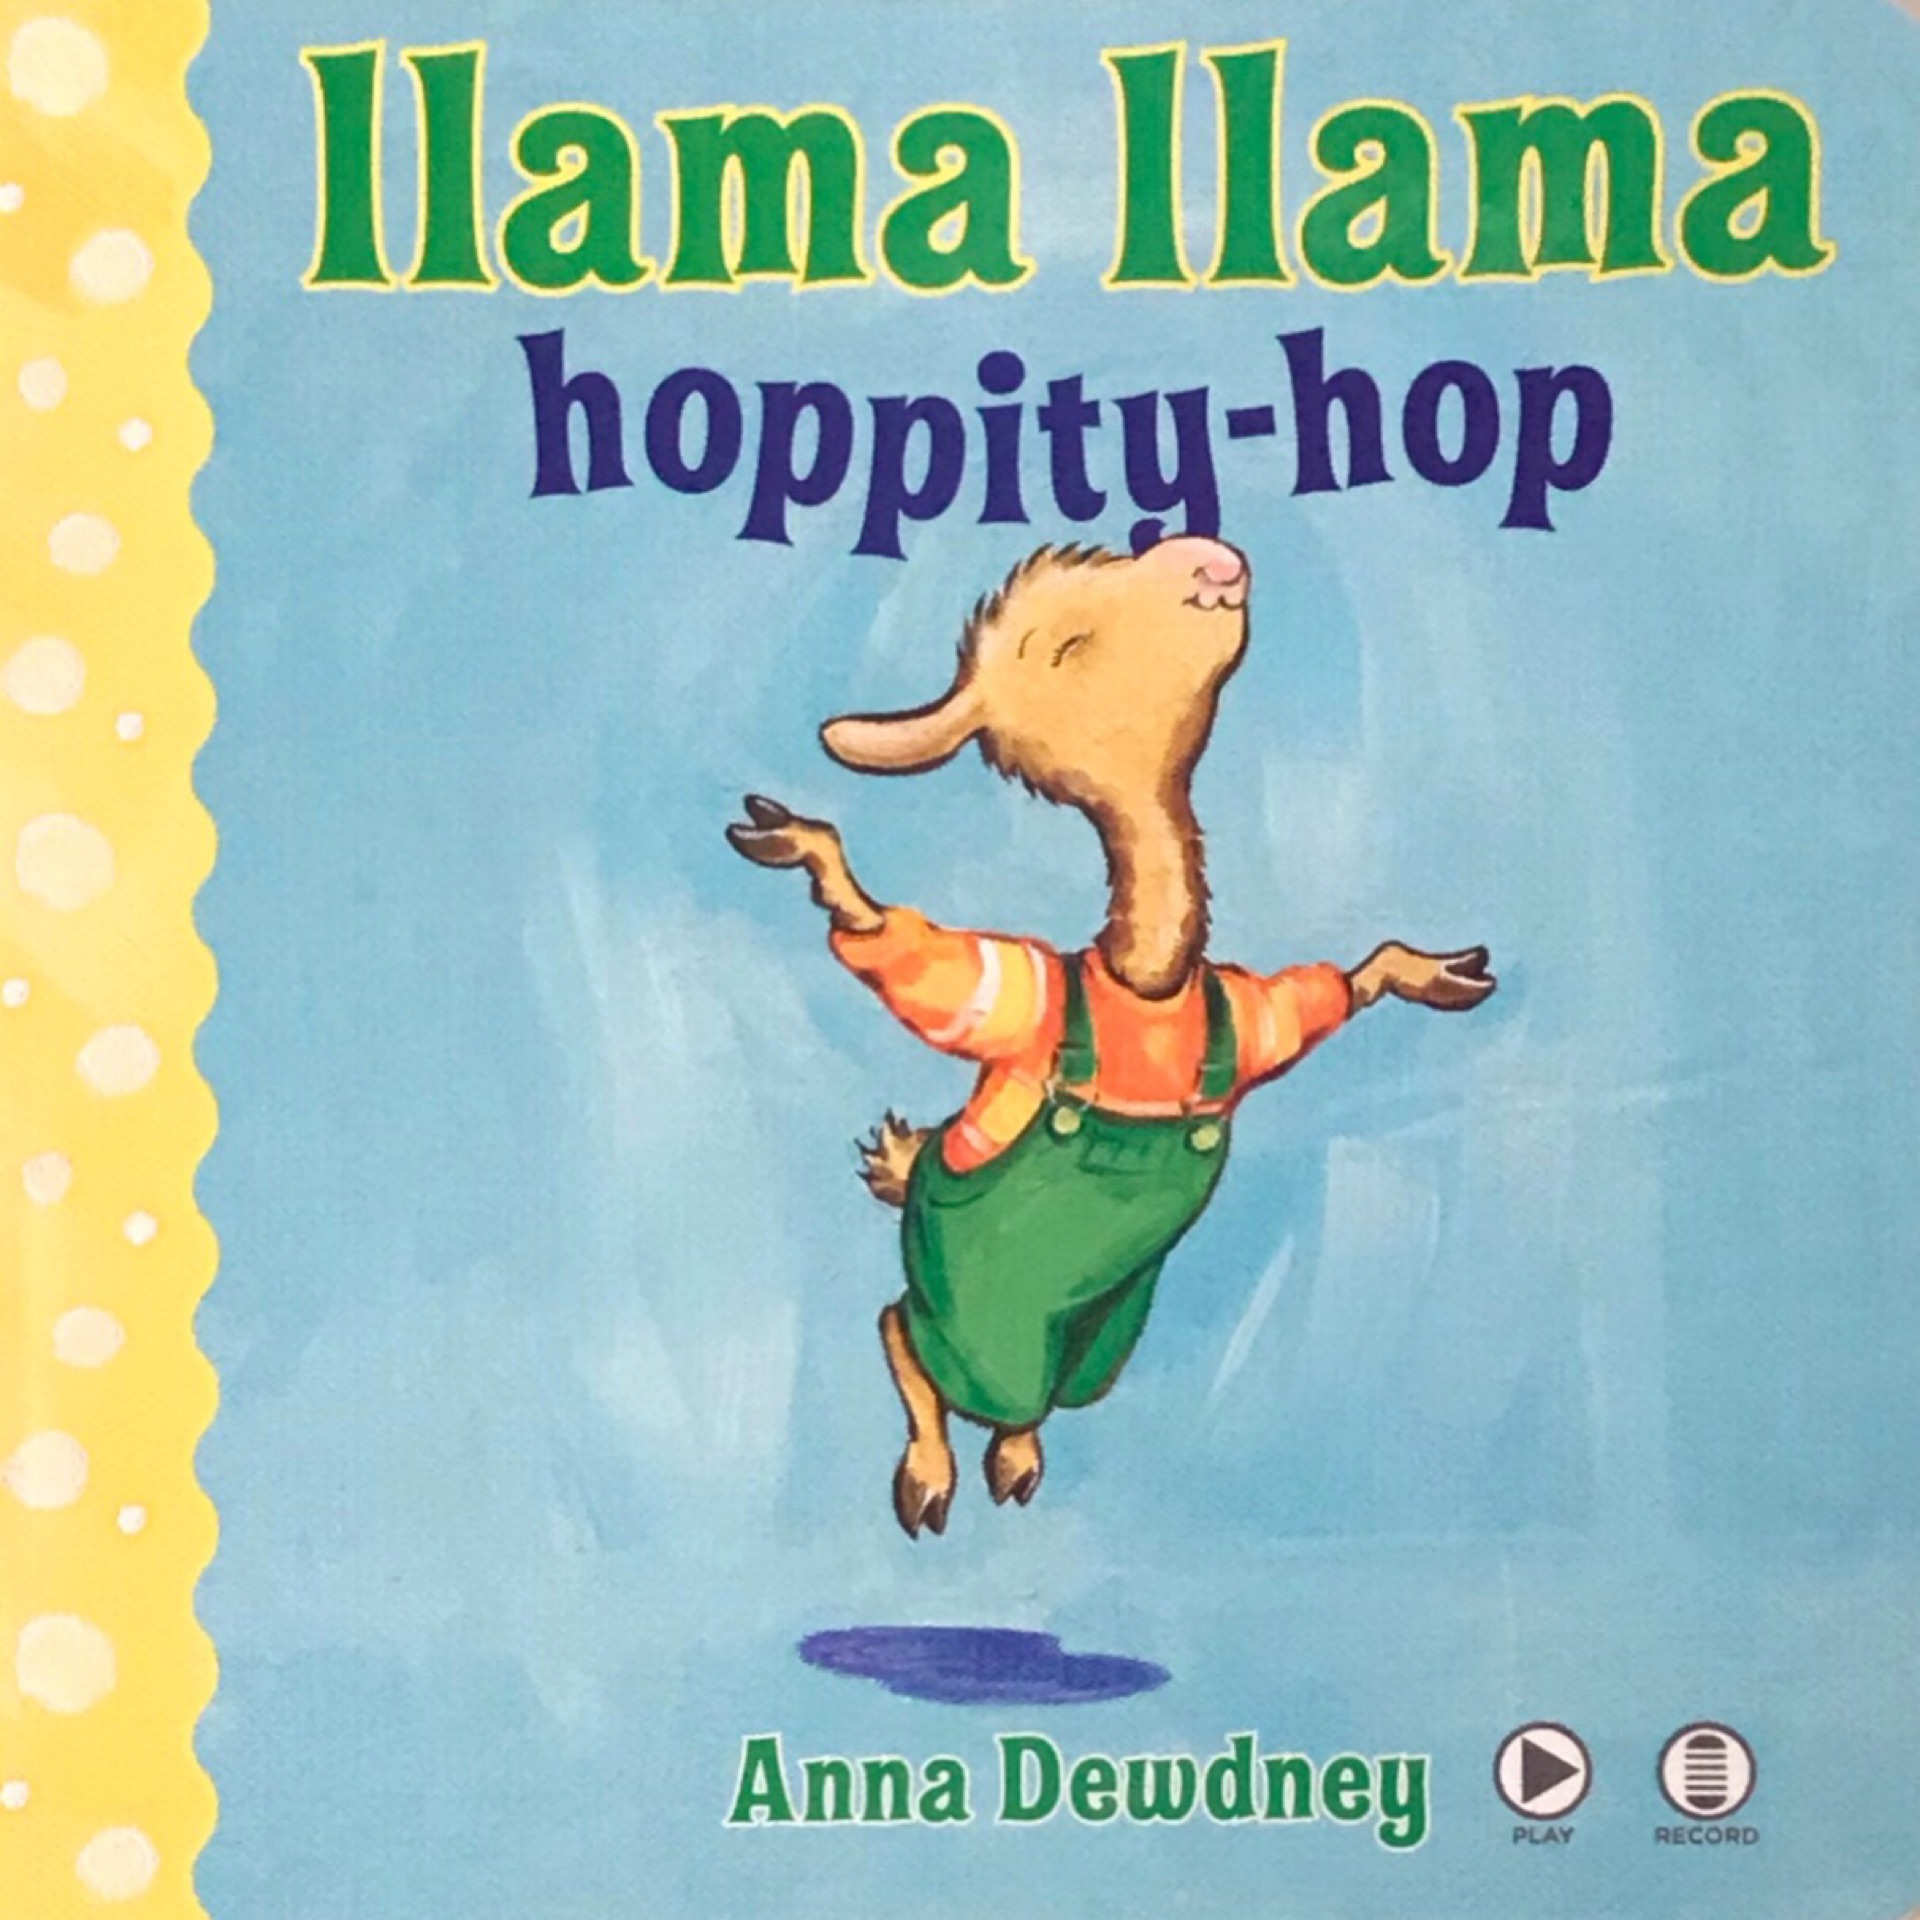 llama llama hoppity-hop